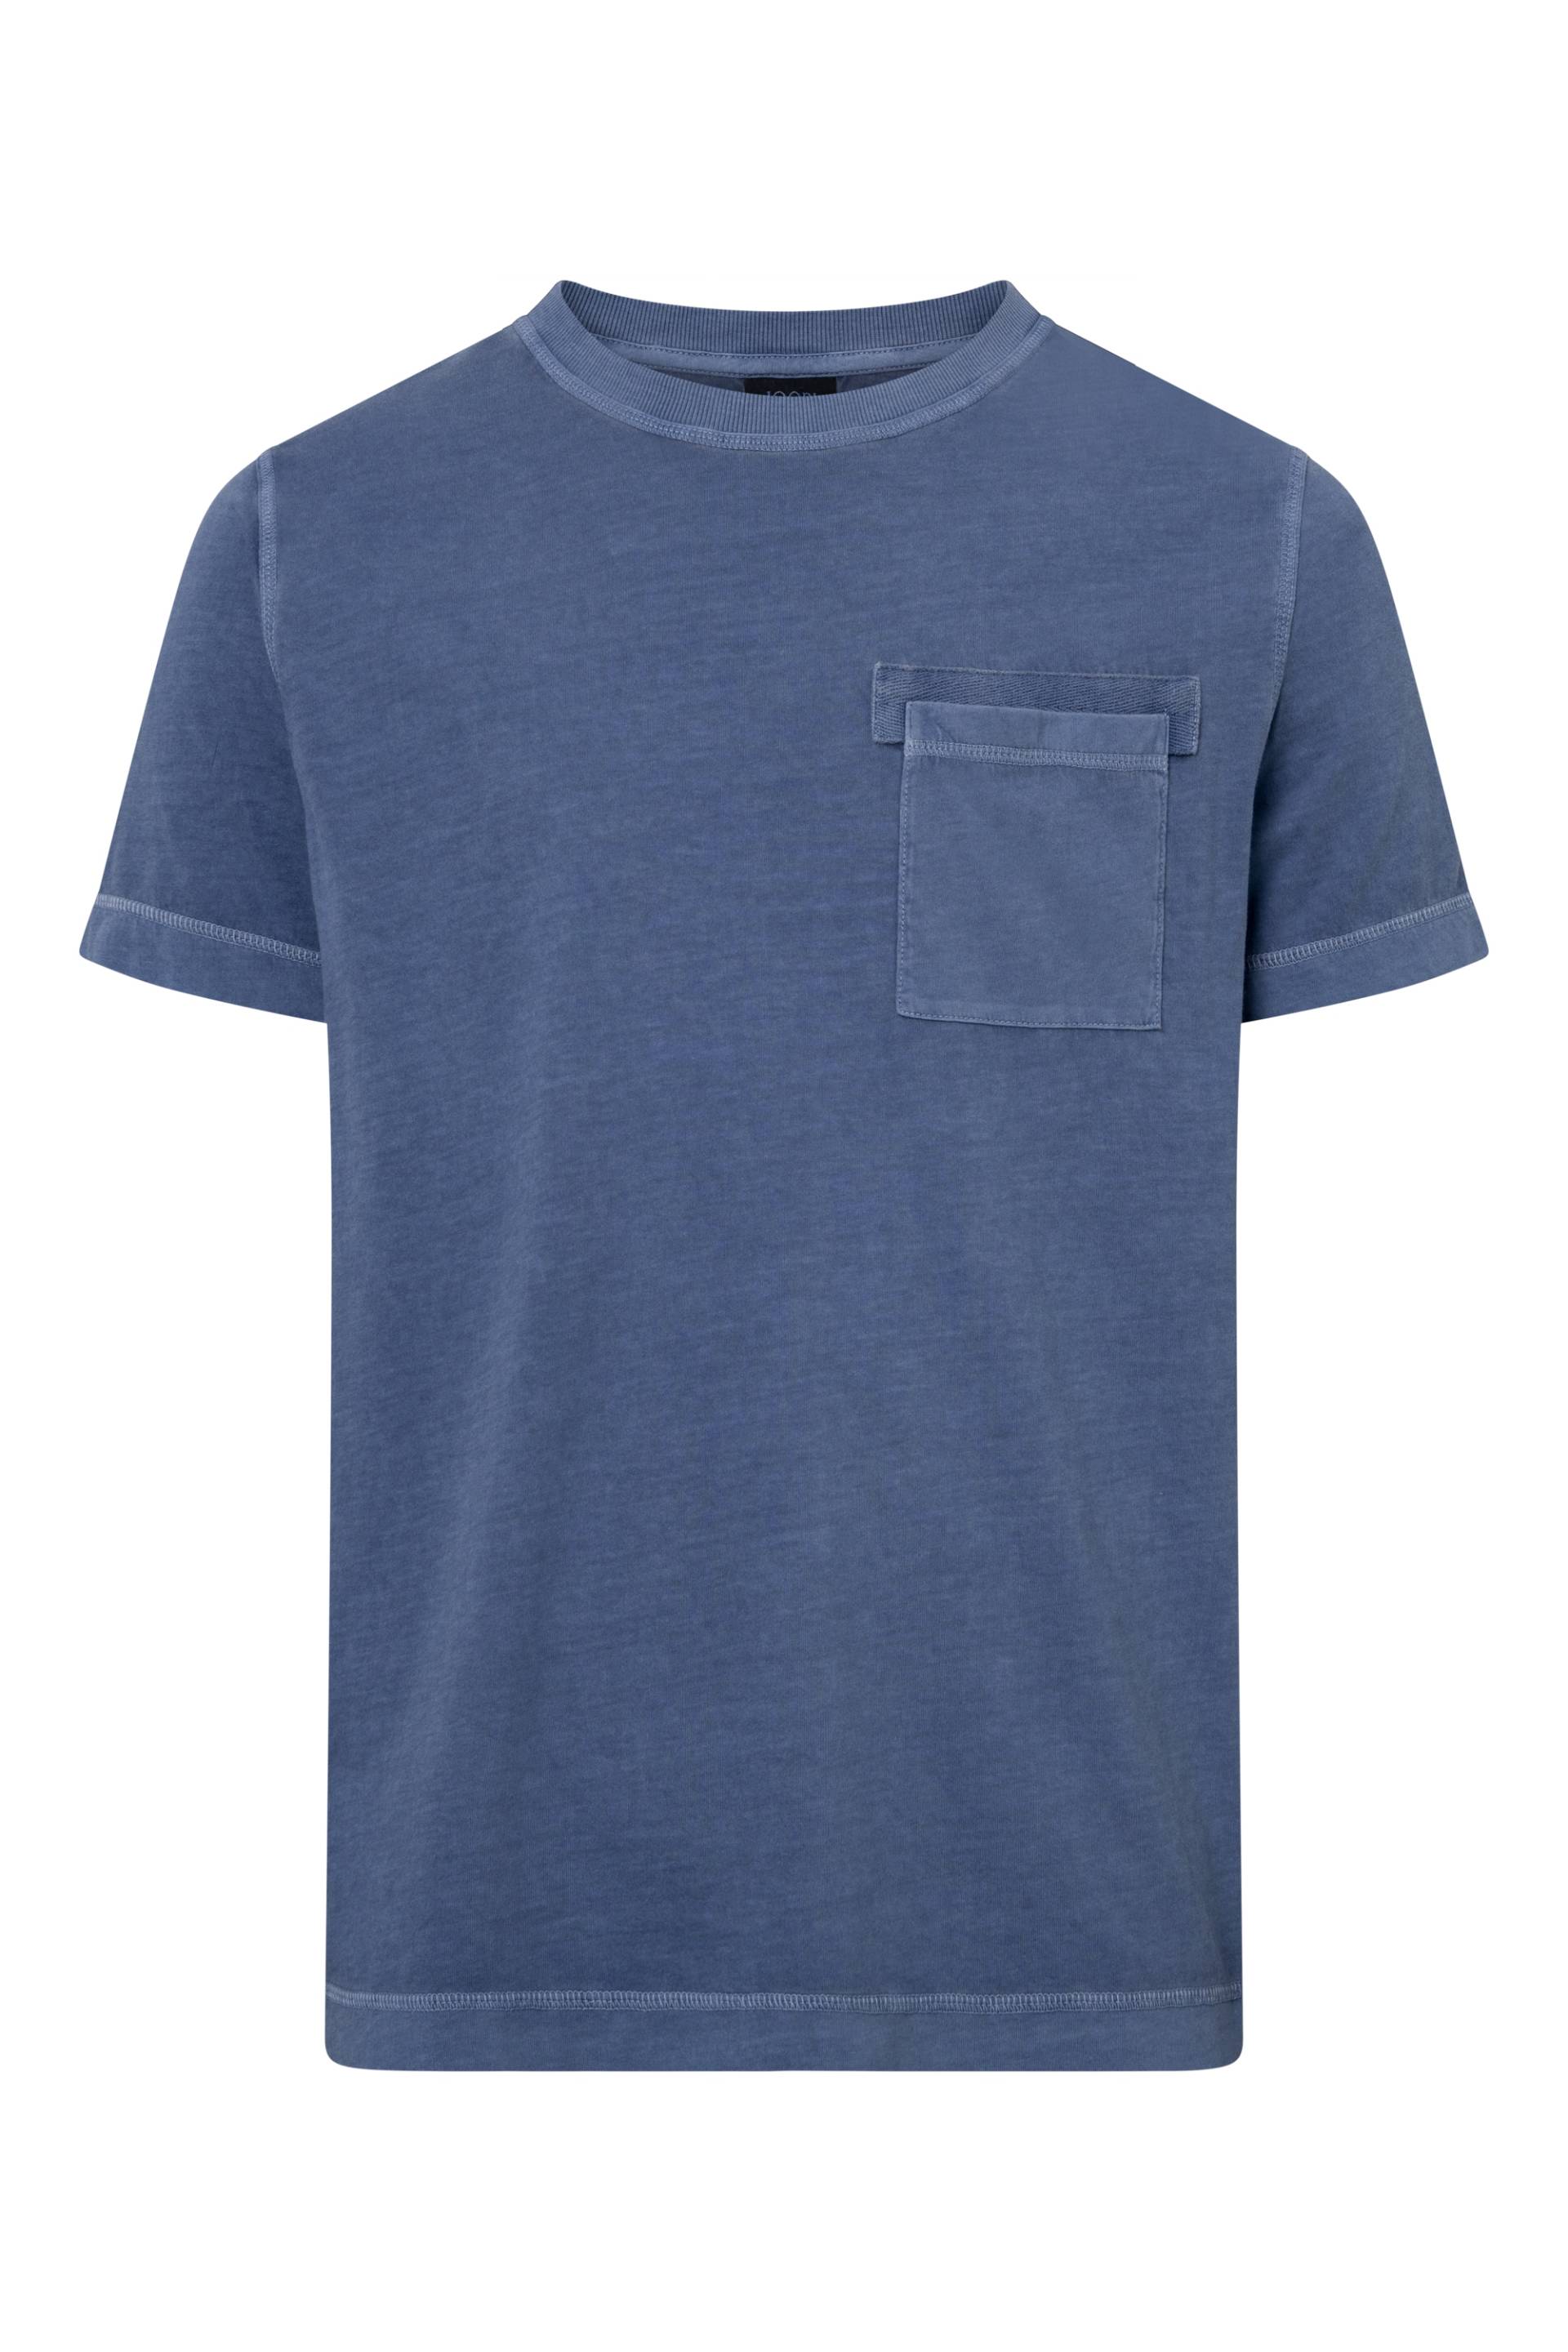 Joop Jeans T-Shirt »Caspar«, leicht verwaschene Optik von Joop Jeans